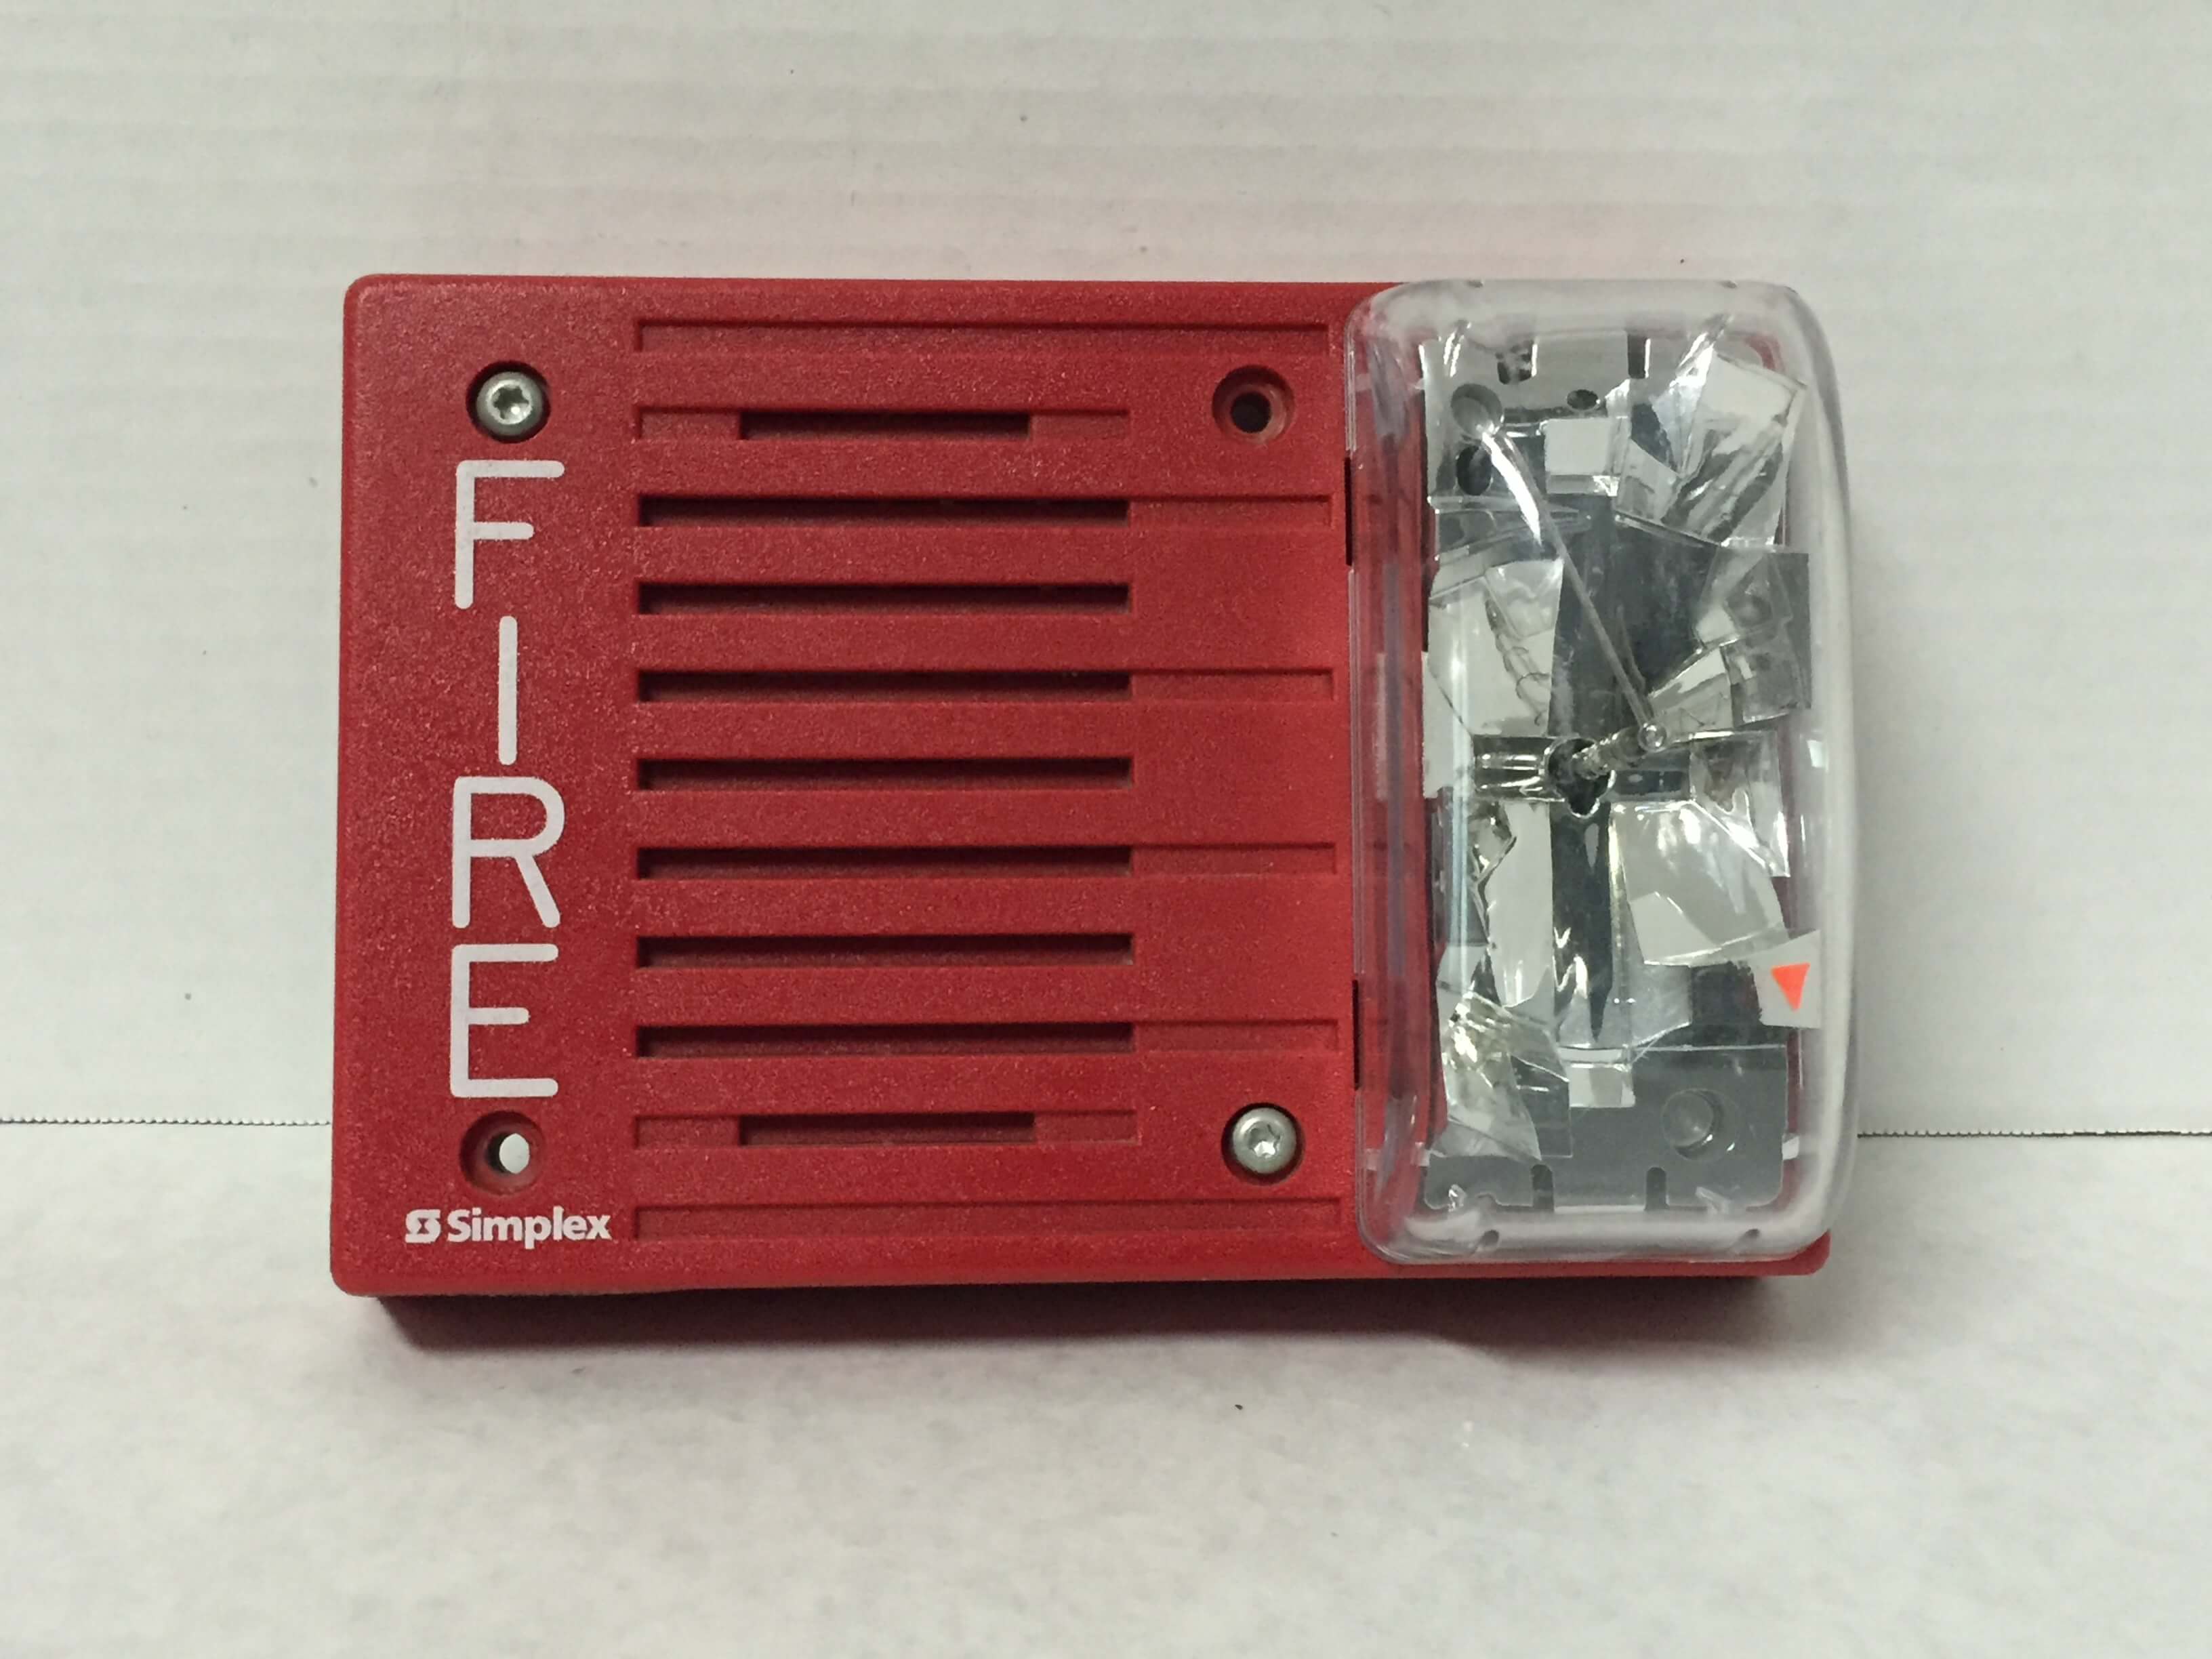 Simplex 4903-9238 - FireAlarms.tv - jjinc24/U8oL0's Fire Alarm ...